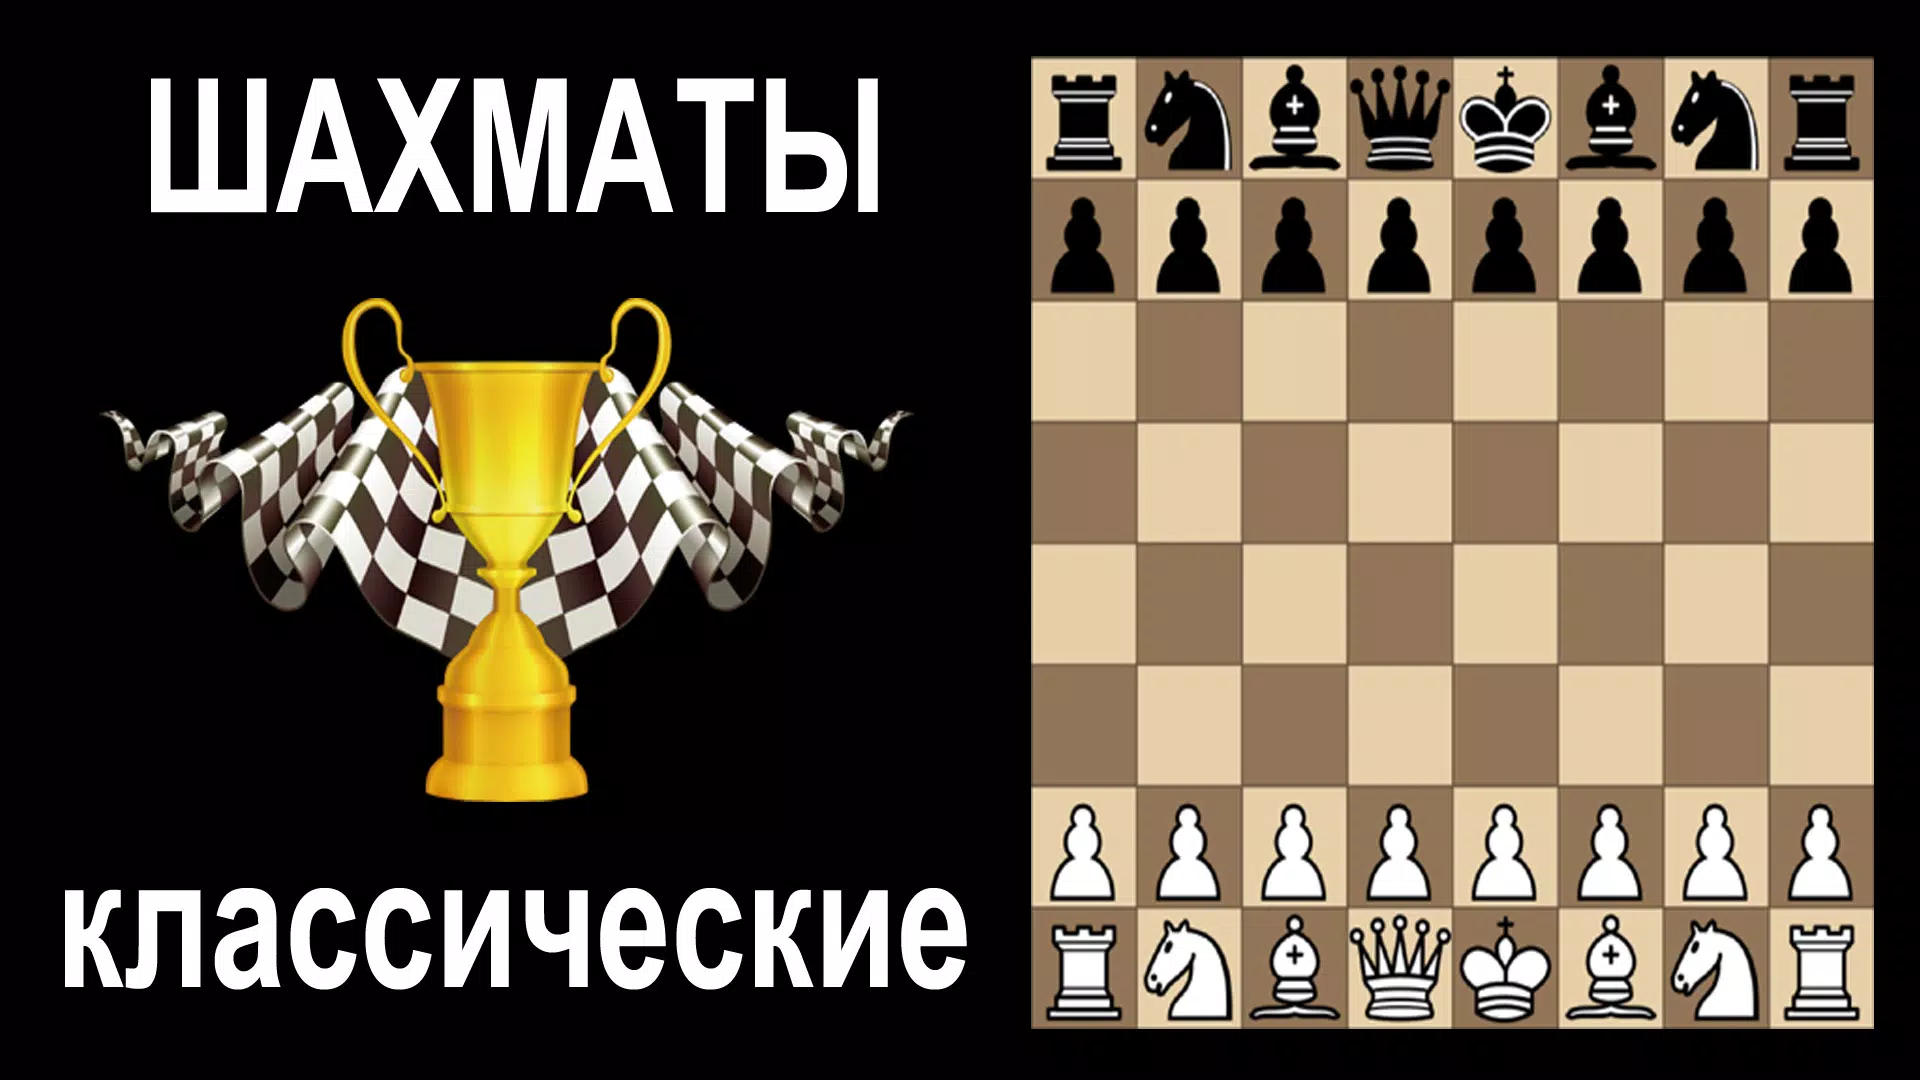 Шахматы онлайн — играть онлайн бесплатно на сервисе Яндекс Игры